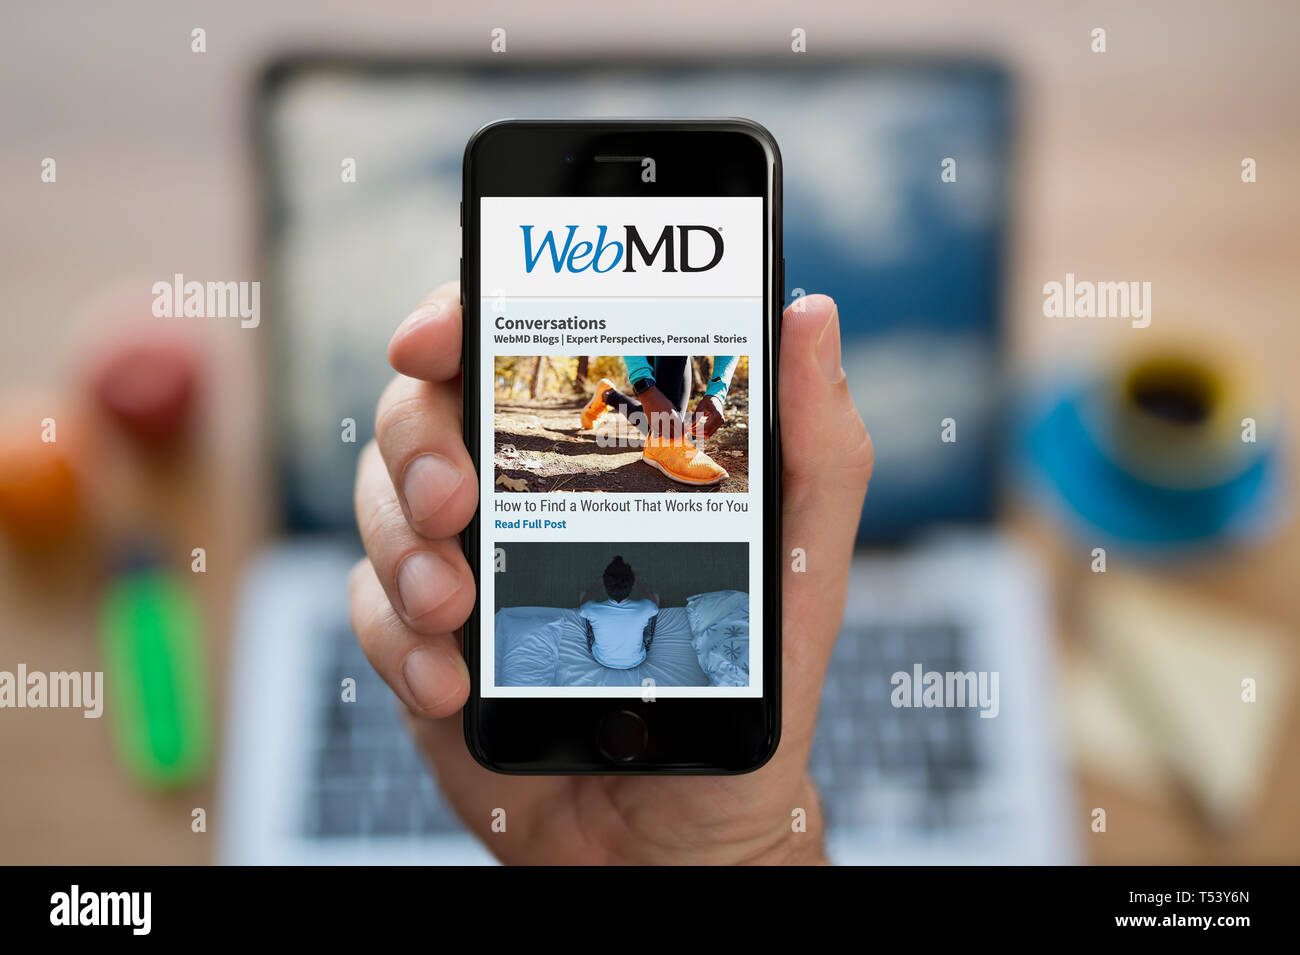 Un hombre mira el iPhone que muestra el logotipo de WebMD (uso Editorial solamente). Foto de stock